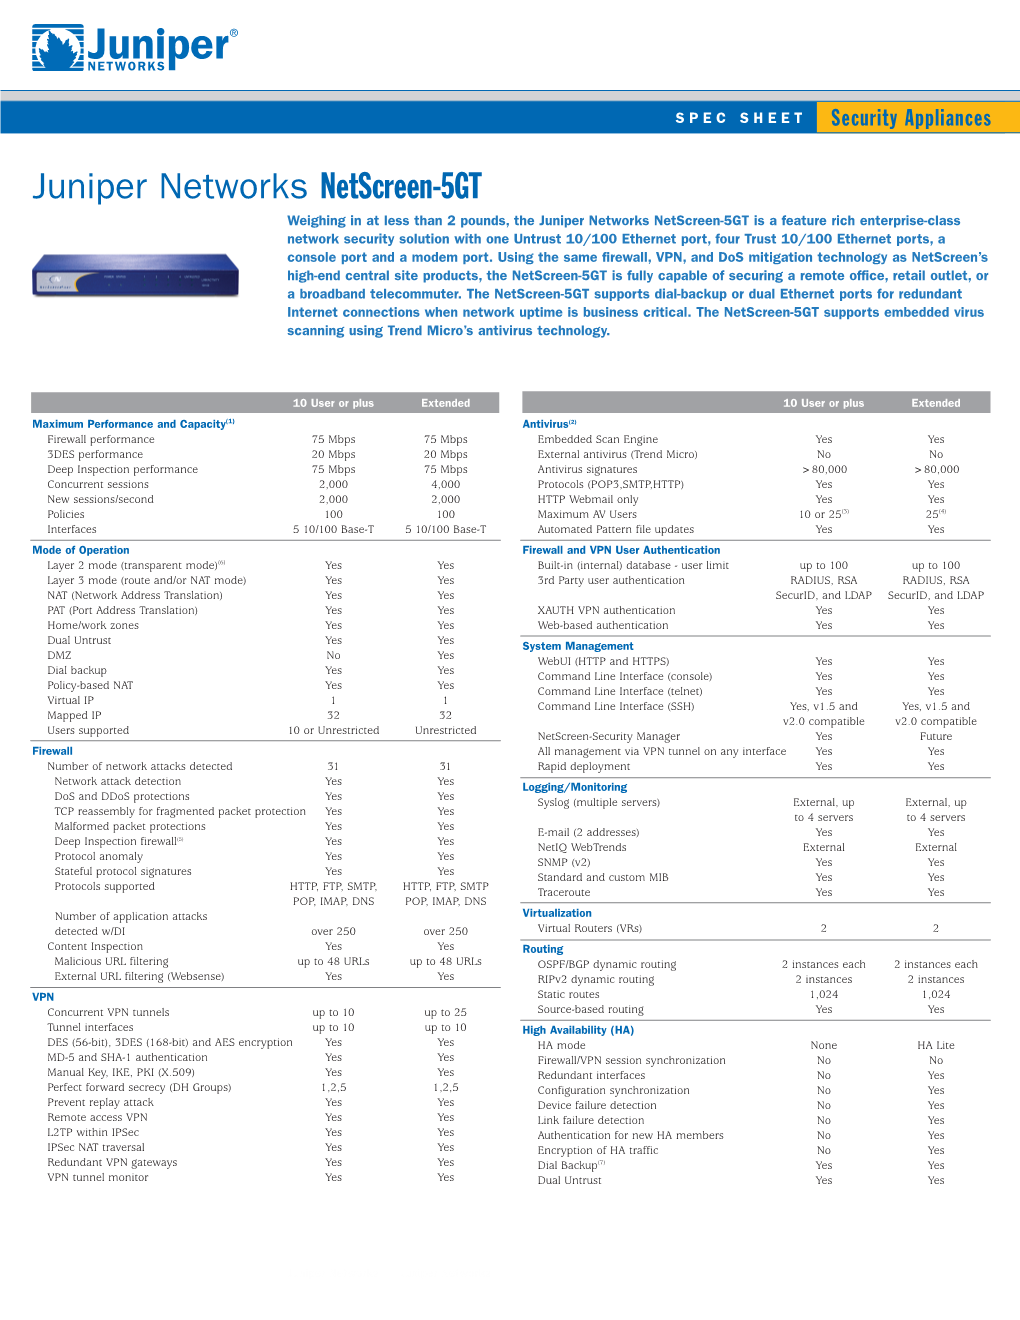 Juniper Networks Netscreen-5GT